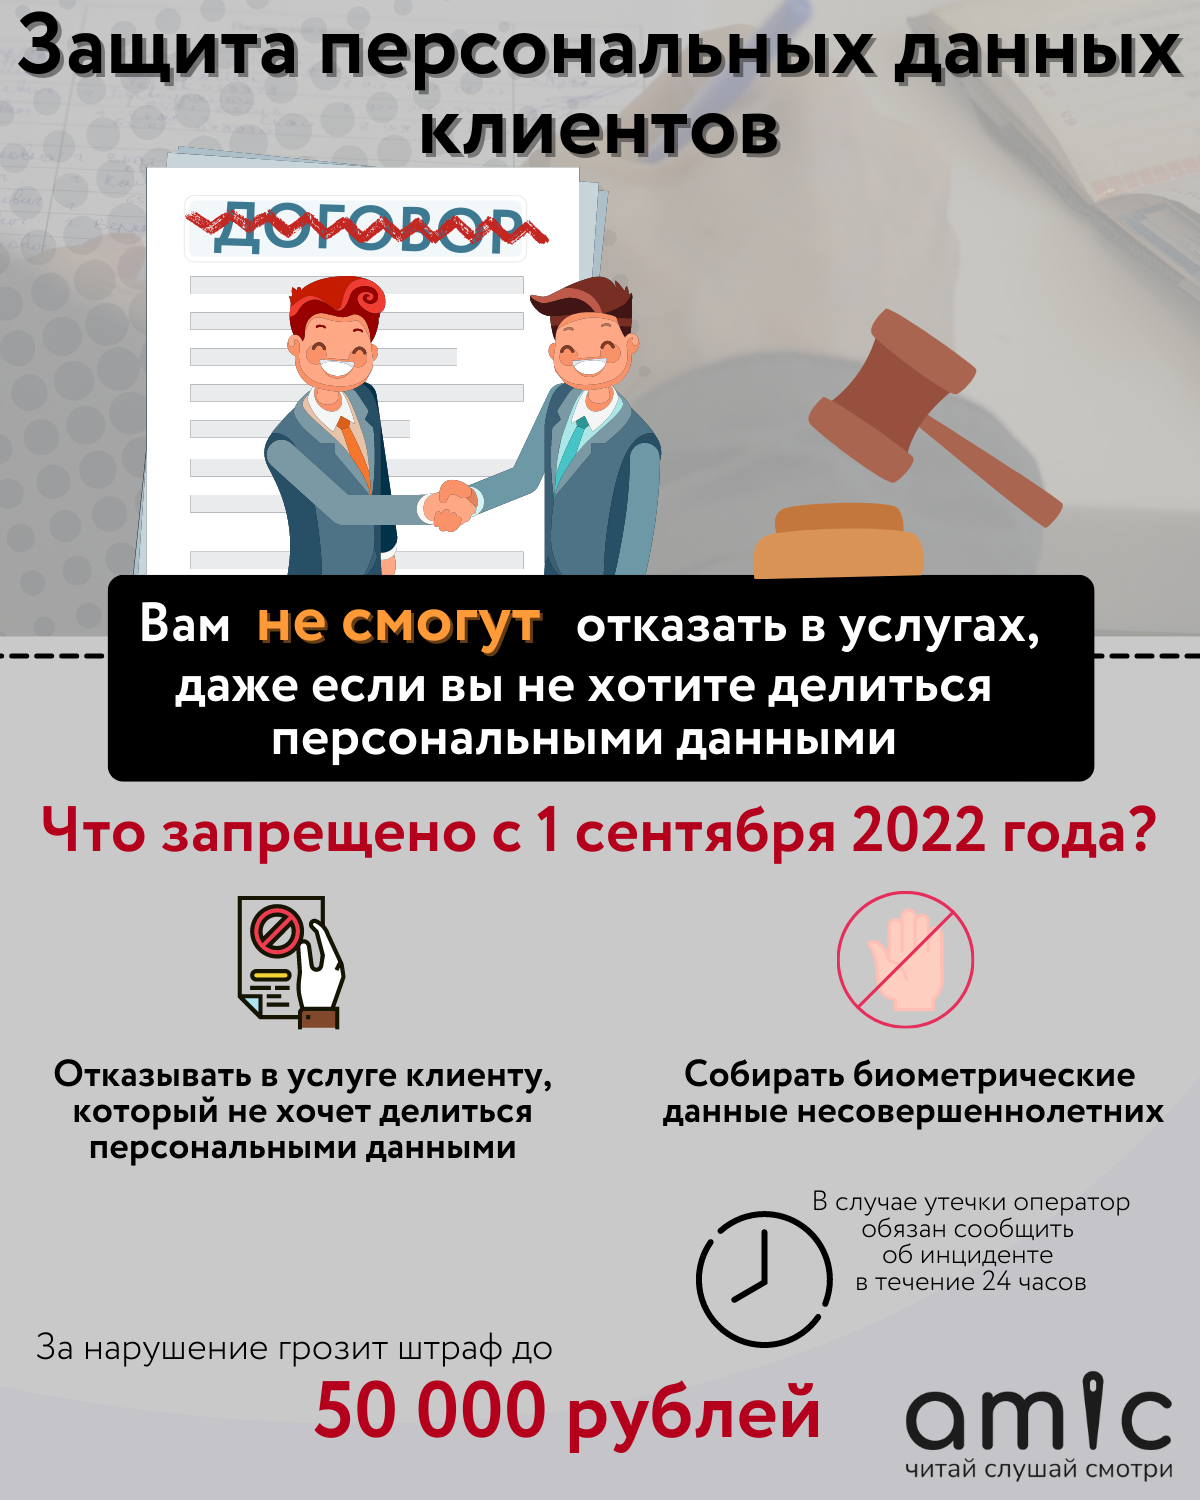 1 сентября изменения законы. Защита персональных данных с 1 сентября 2022. Сбор персональных данных с 1 сентября. Законы с 1 сентября 2022. Что изменится в жизни россиян с 1 сентября.